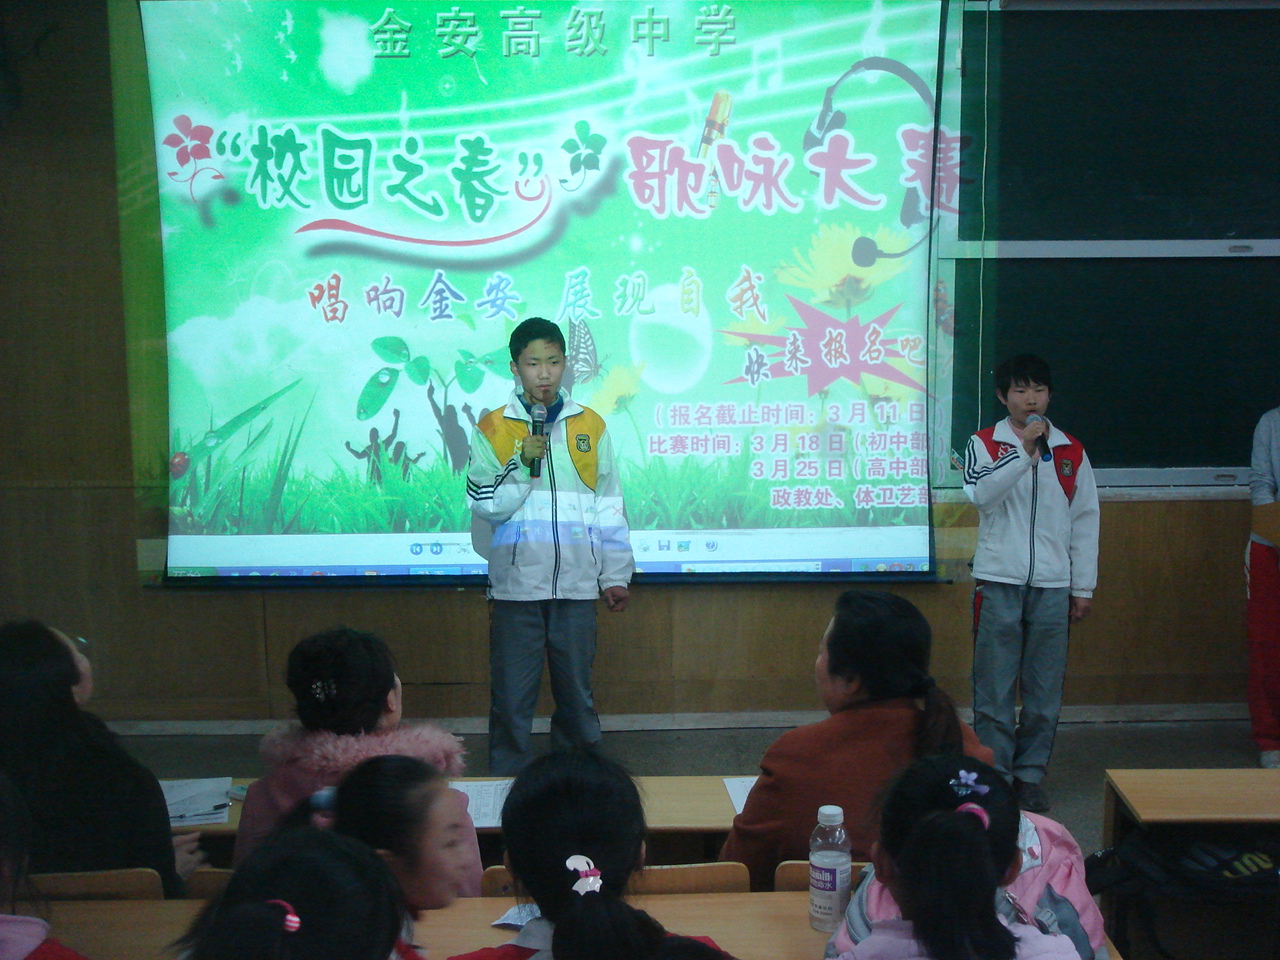 我校成功举办“校园之春”歌咏比赛